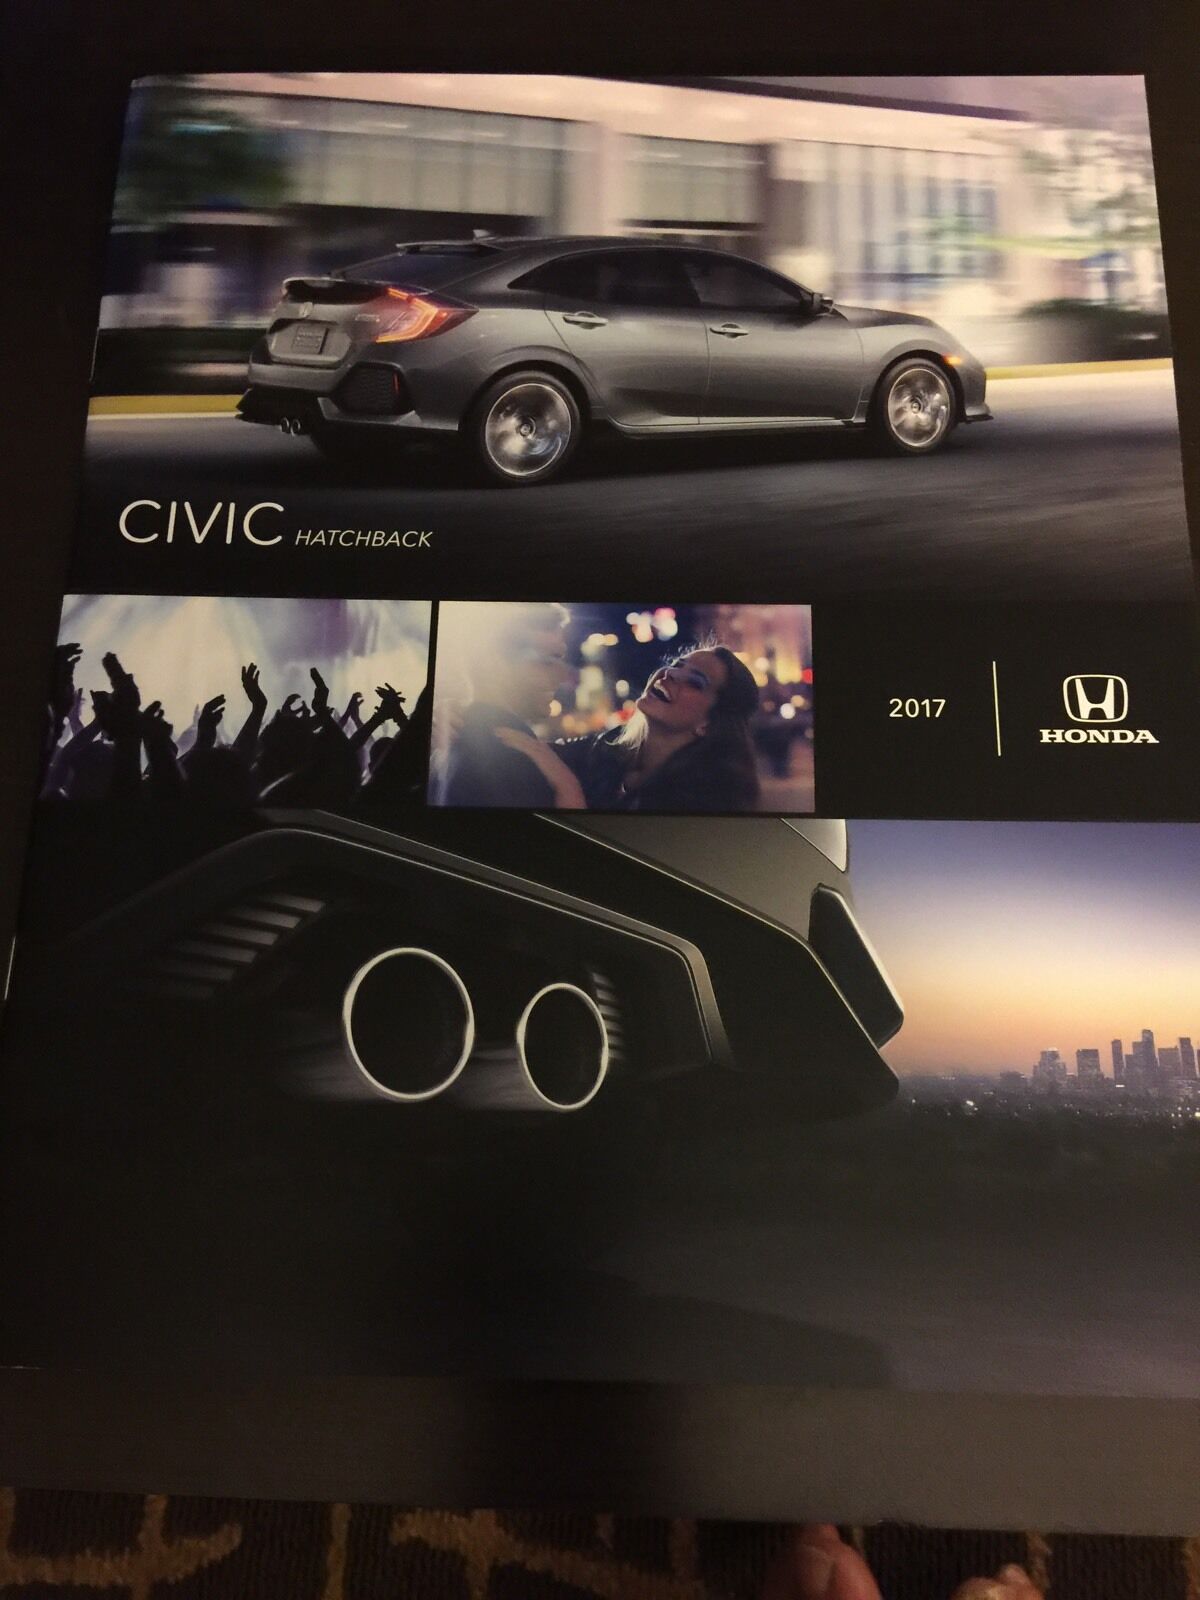 2017 HONDA CIVIC HATCHBACK 8-page Original Sales Brochure